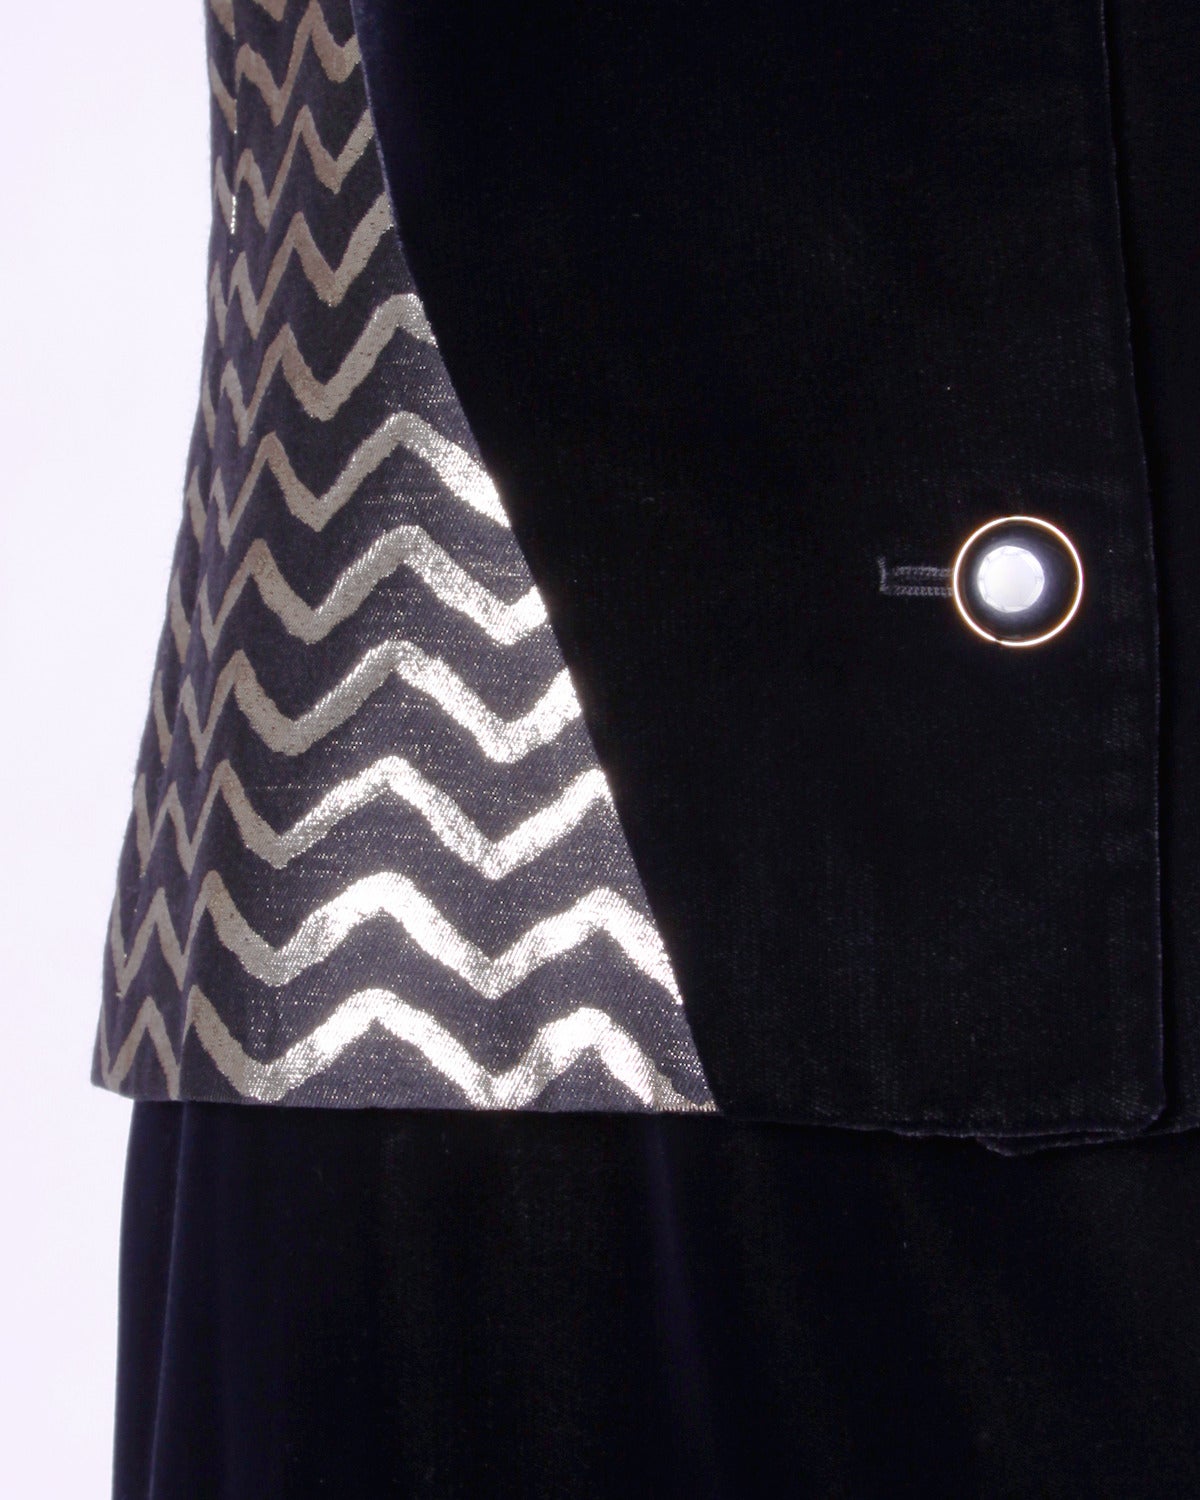 Eleganter Vintage-Anzug von Givenchy mit schwarzem Seidensamt und gold-metallic und schwarzem Chevron-Muster auf dem Stoff. Tragen Sie den Rock und die Jacke zusammen oder getrennt!

Einzelheiten:

Vollständig gefüttert
Vorderer Knopfverschluss